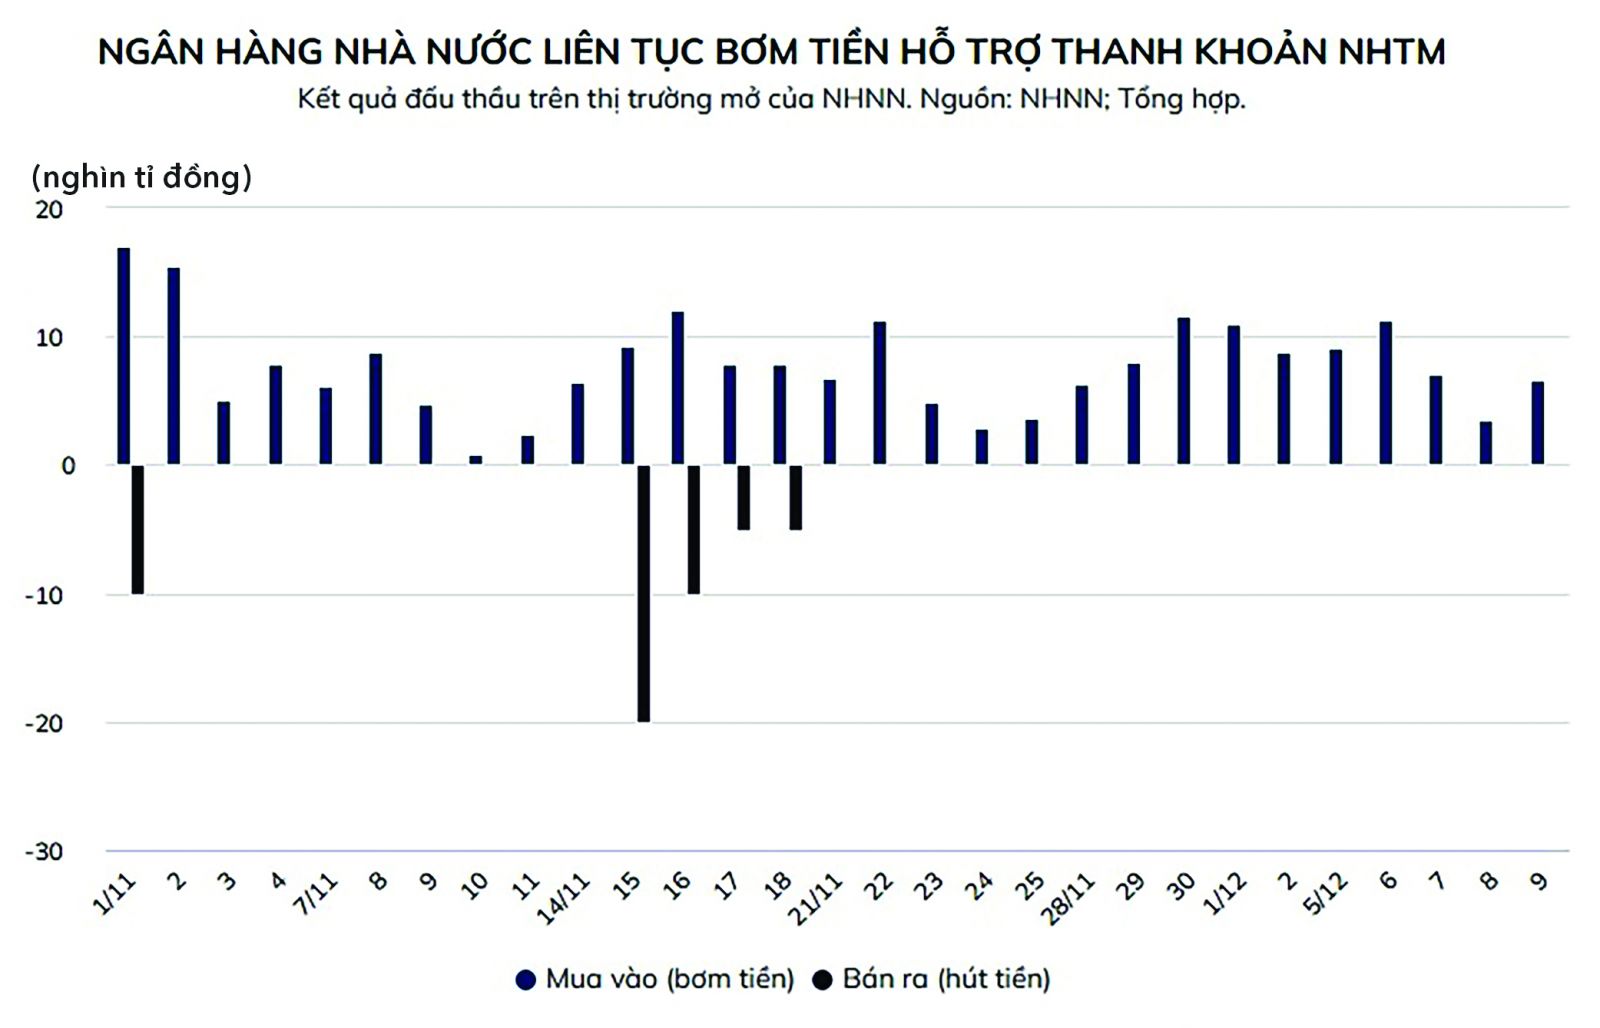 p/Chính sách tiền tệ của NHNN đang dần nới lỏng hơn sau giai đoạn thắt chặt trước đó